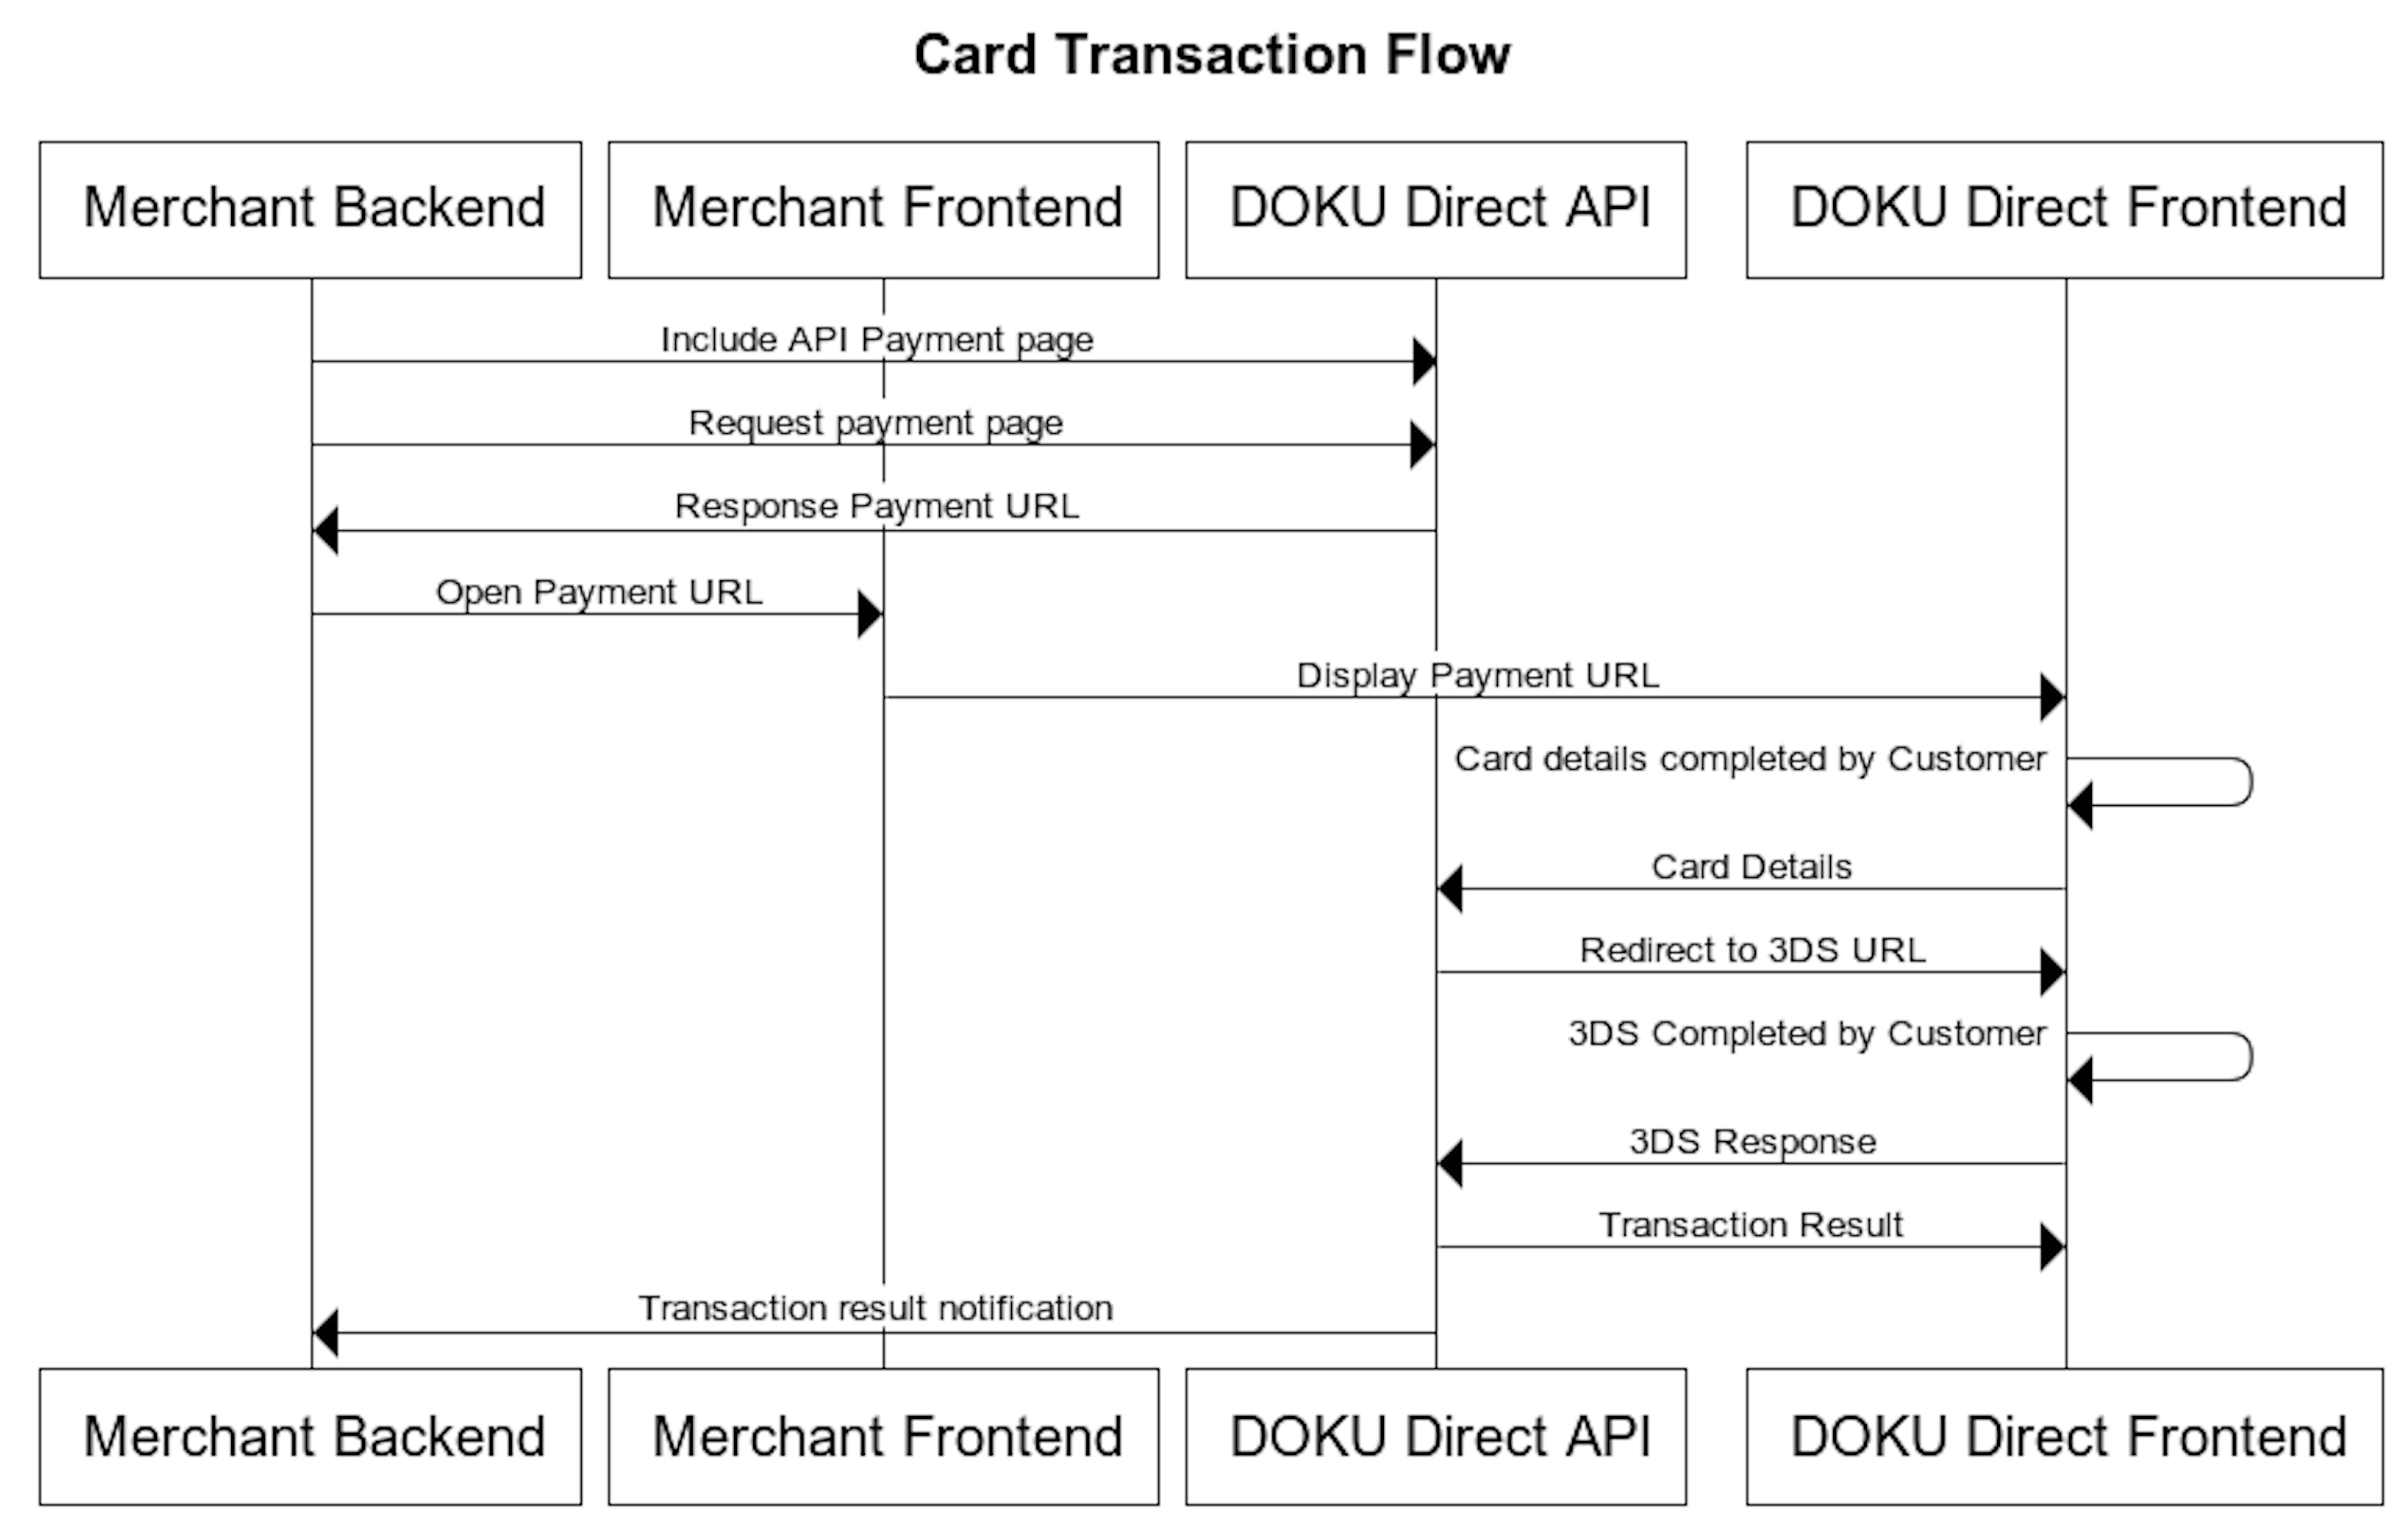 DOKU Direct Credit Card Merchant Flow